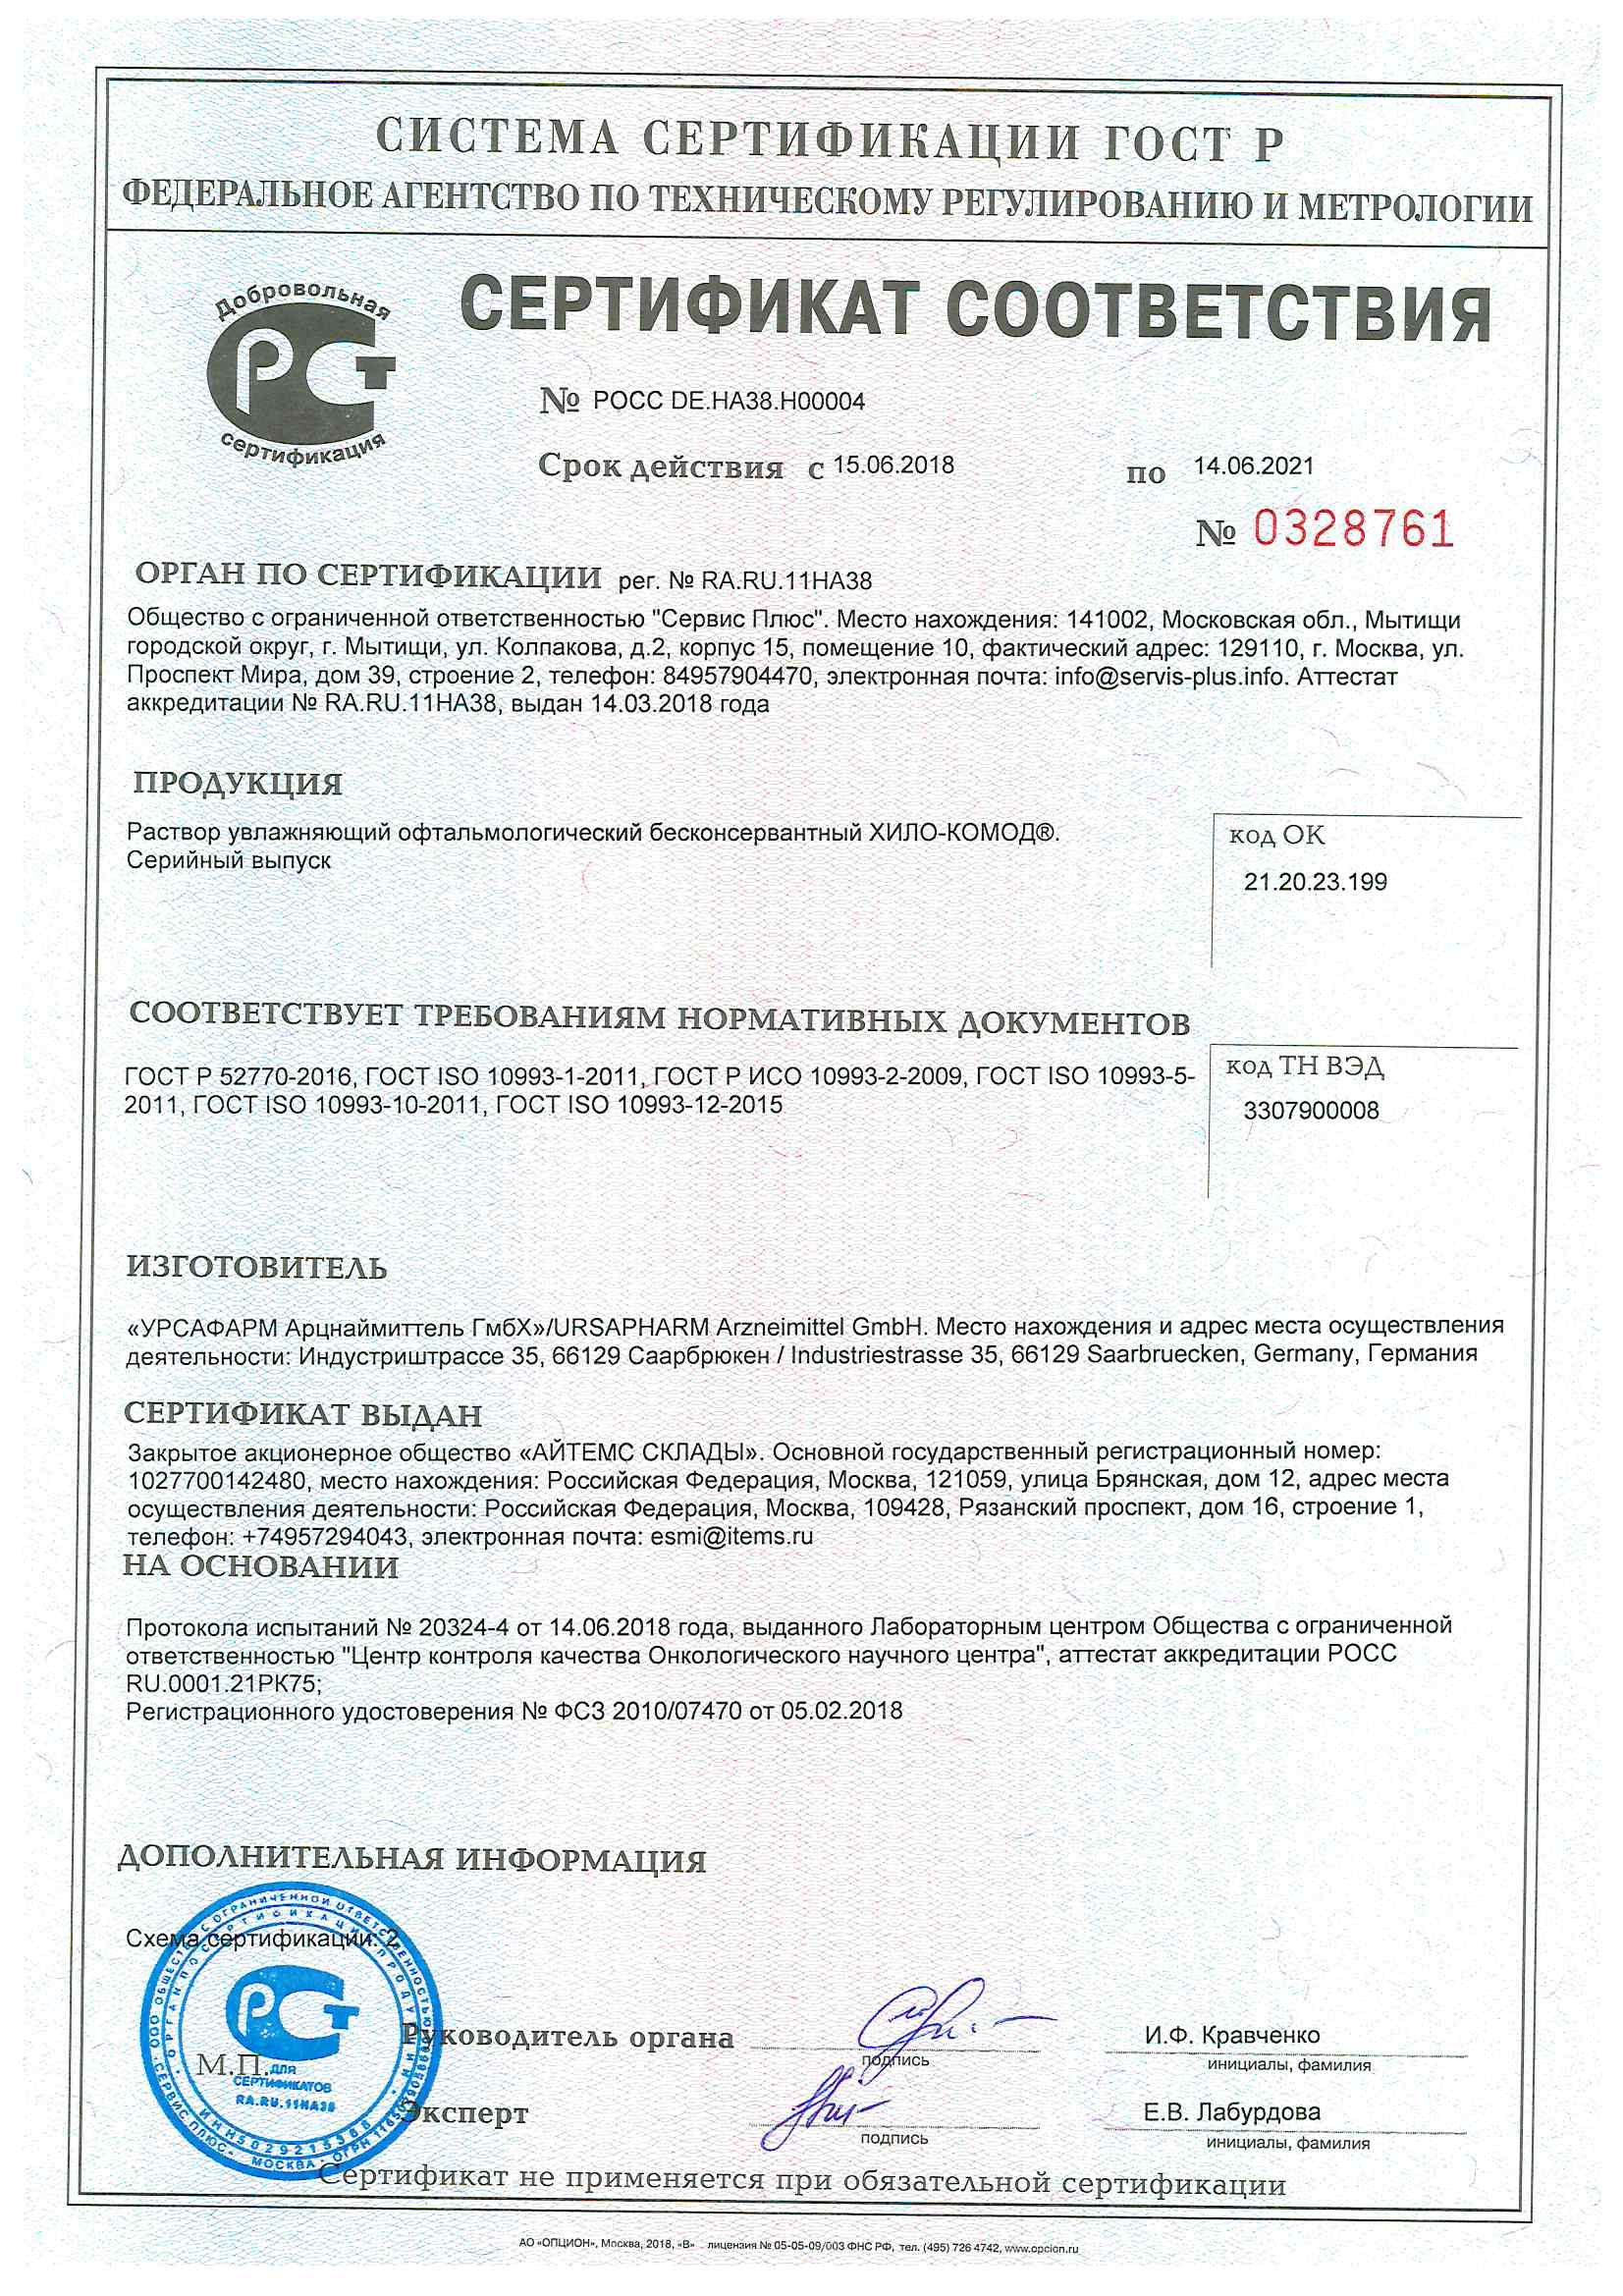 Хило-Комод сертификат